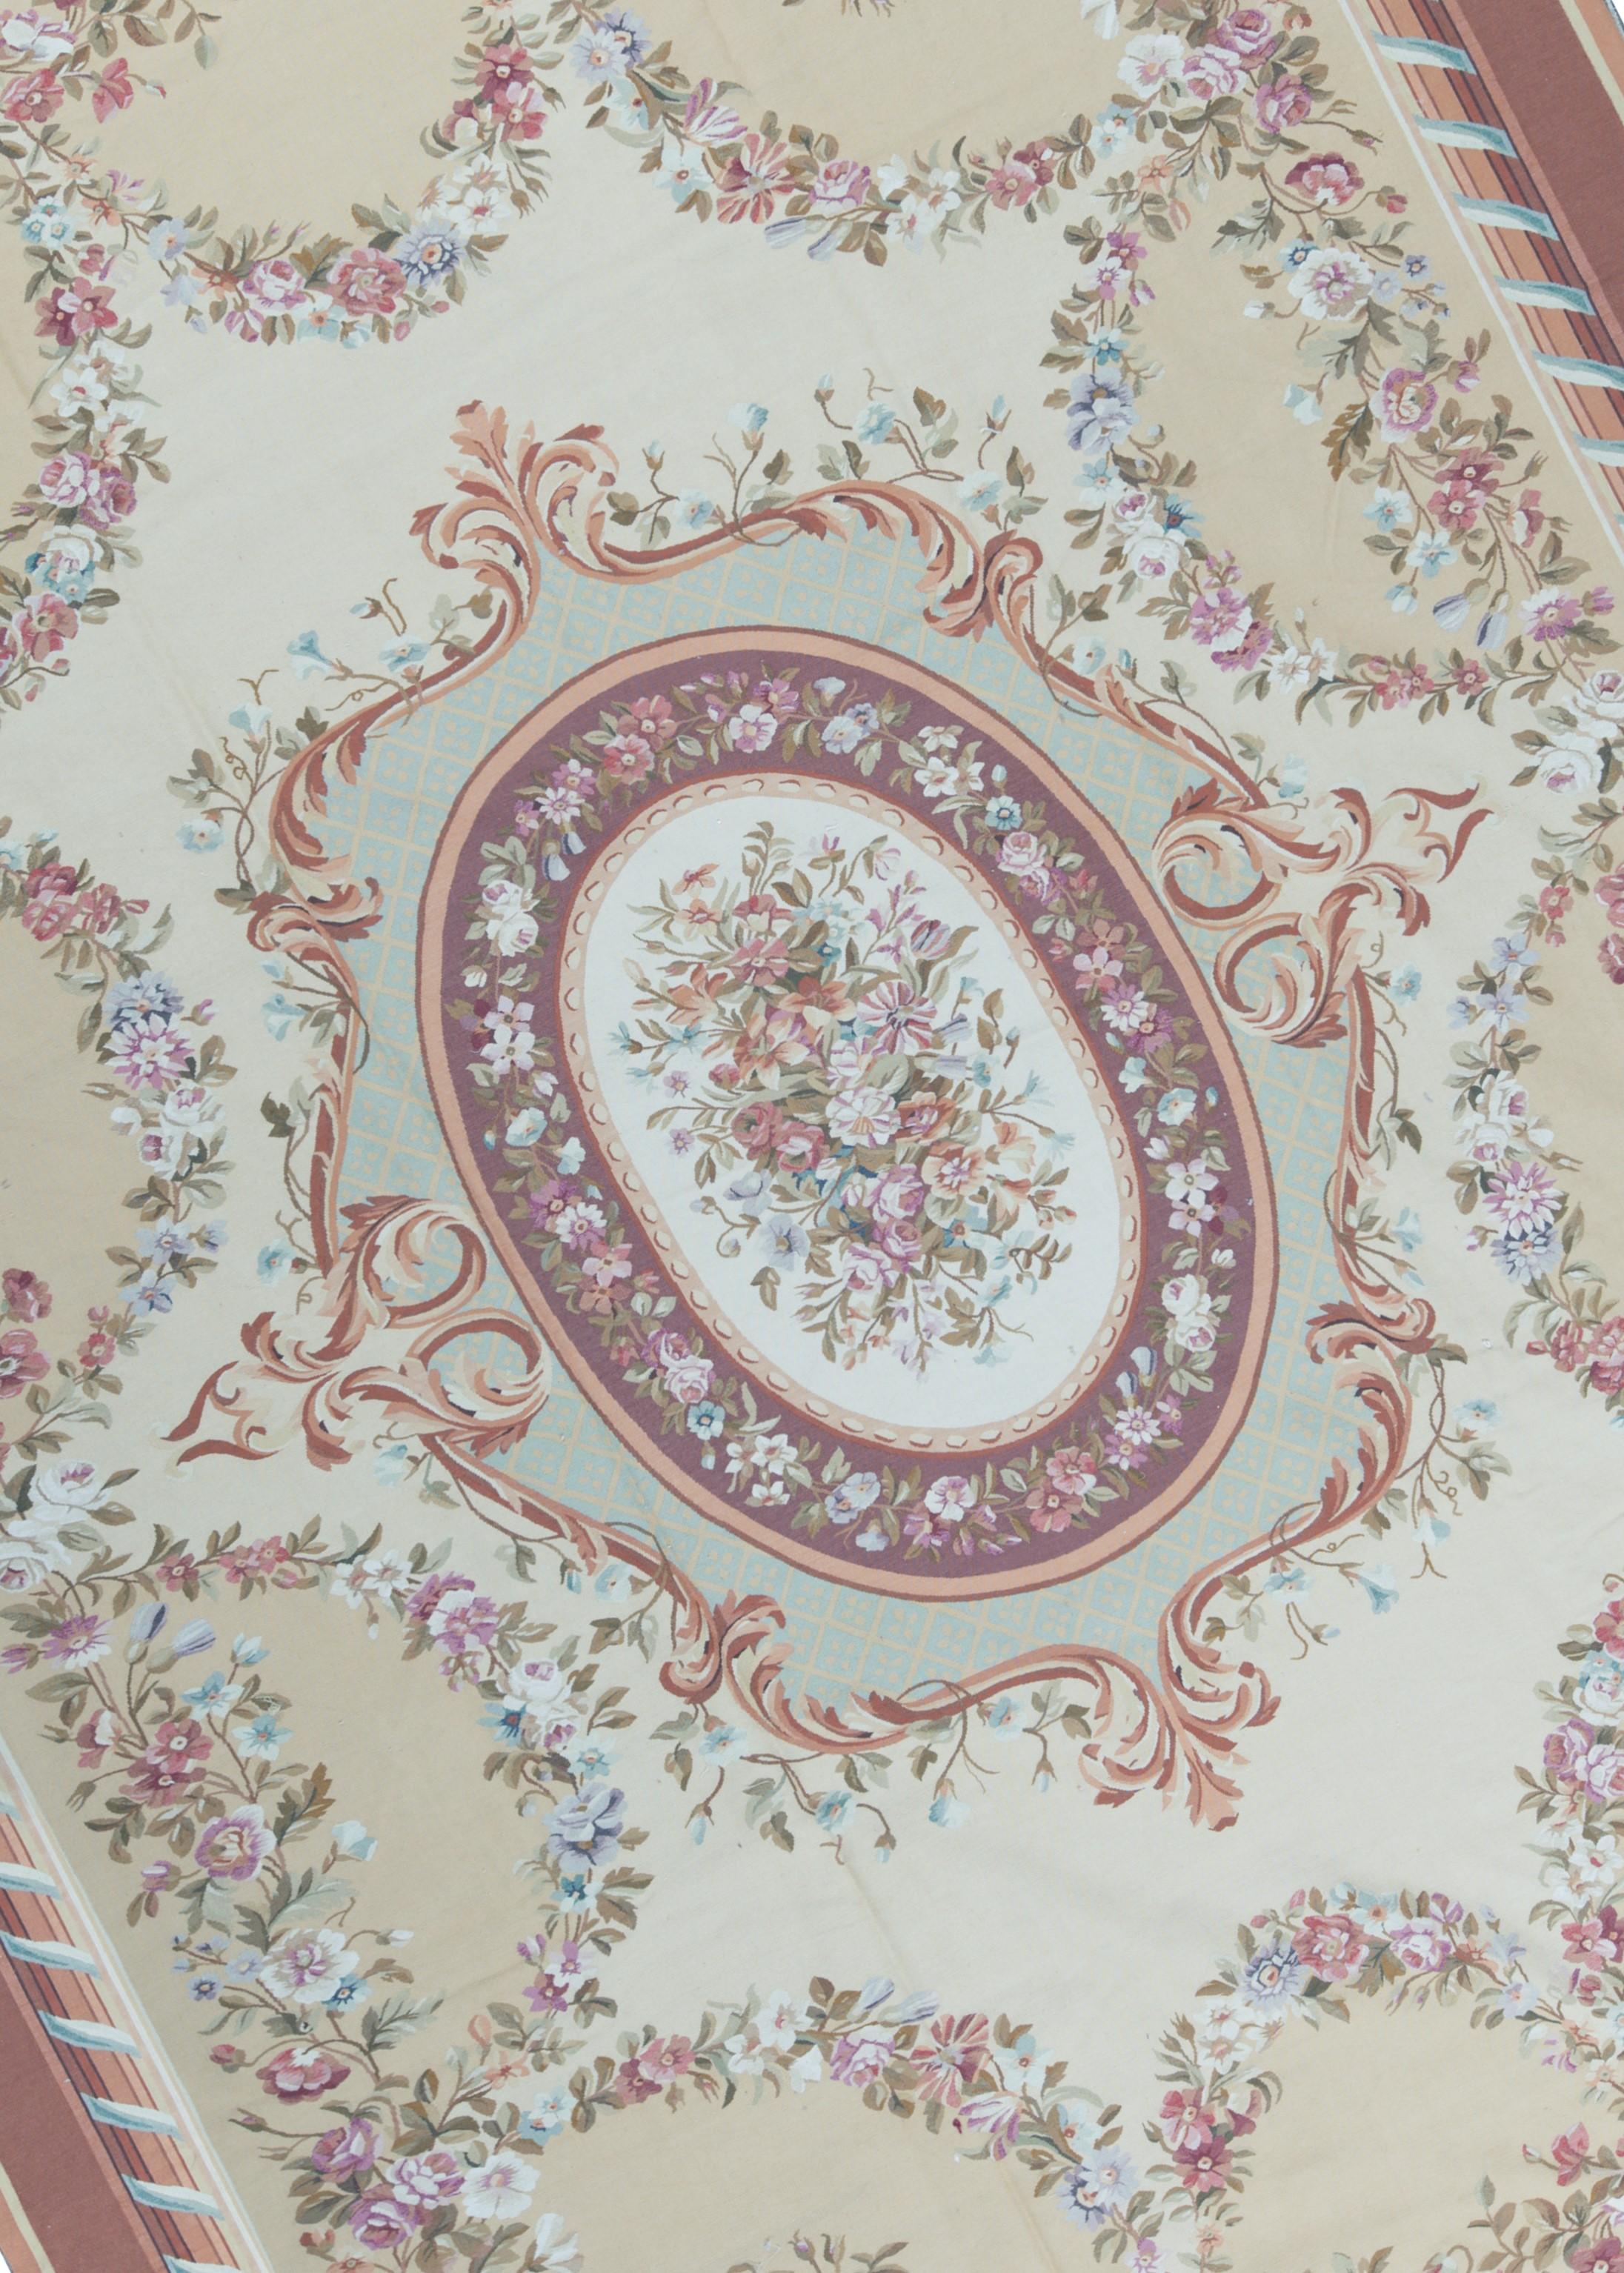 Recréation tissée à la main des tapis français classiques à tissage plat d'Aubusson que l'on trouve dans les plus belles demeures et les plus beaux palais depuis la fin du XVIIe siècle. Taille : 13'10'' x 17'10''.